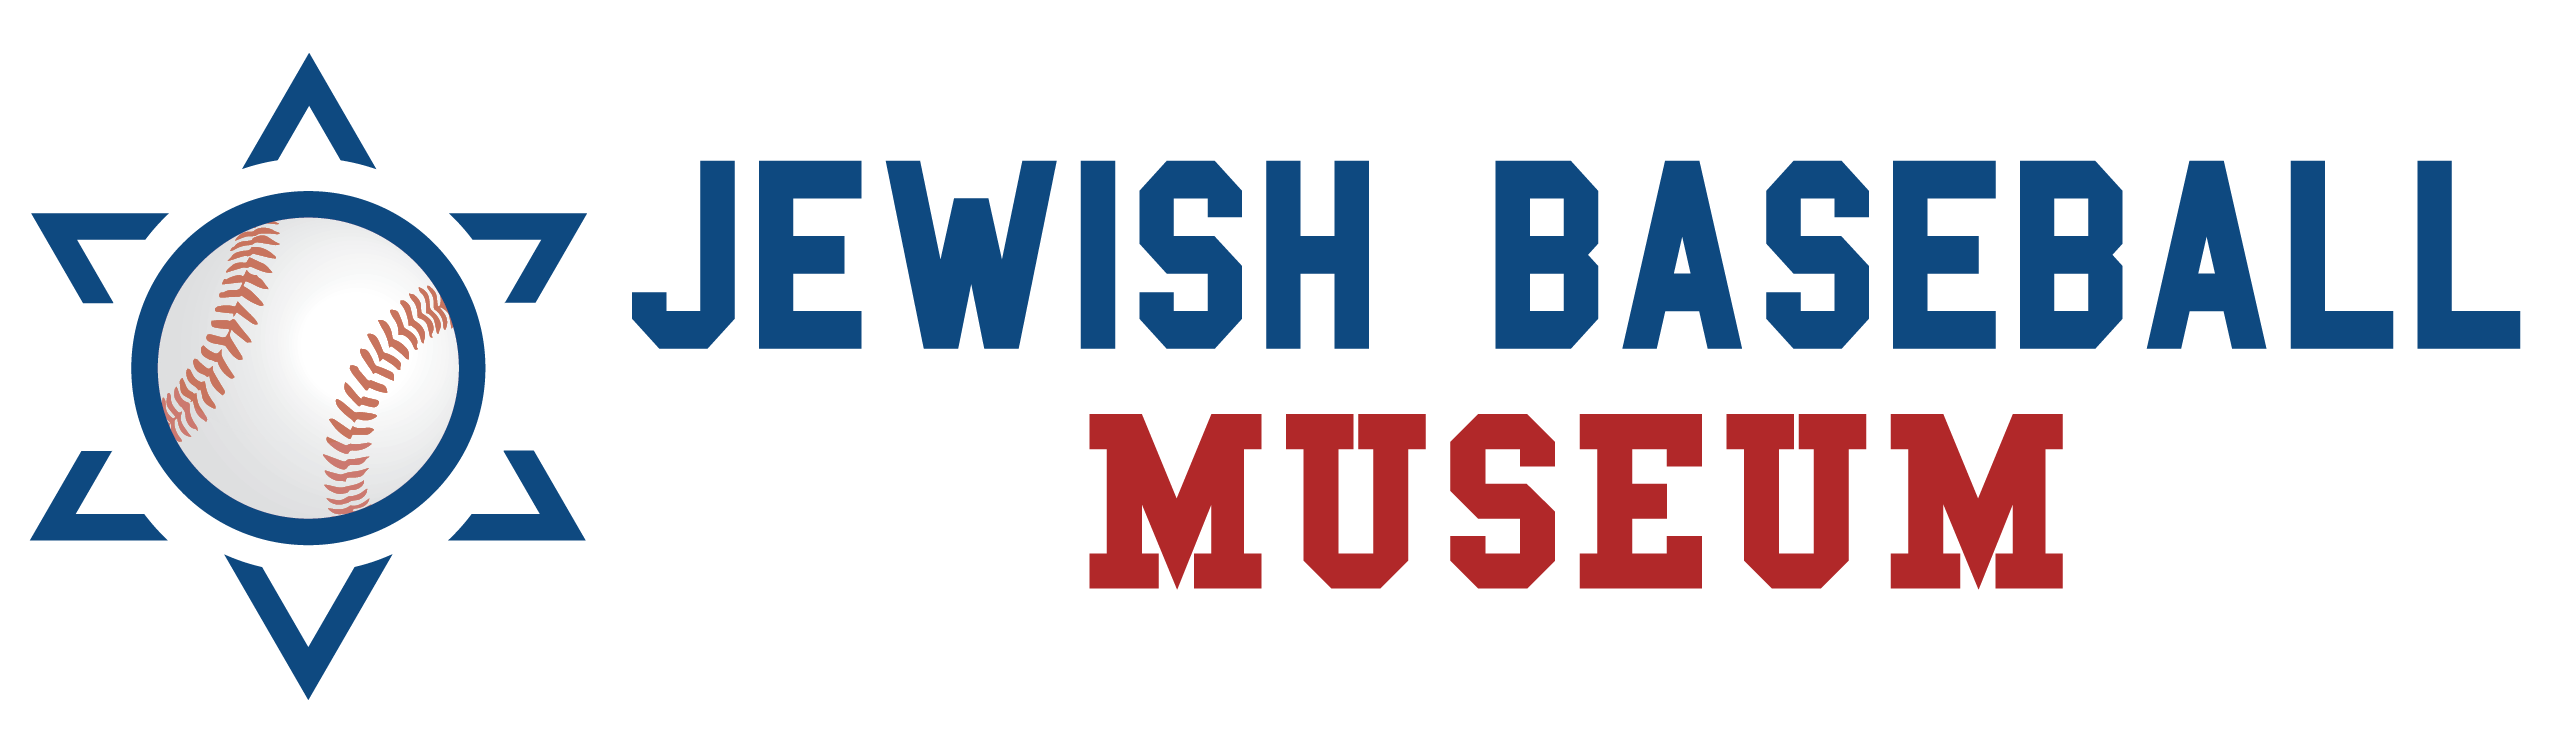 Jewish Baseball Museum